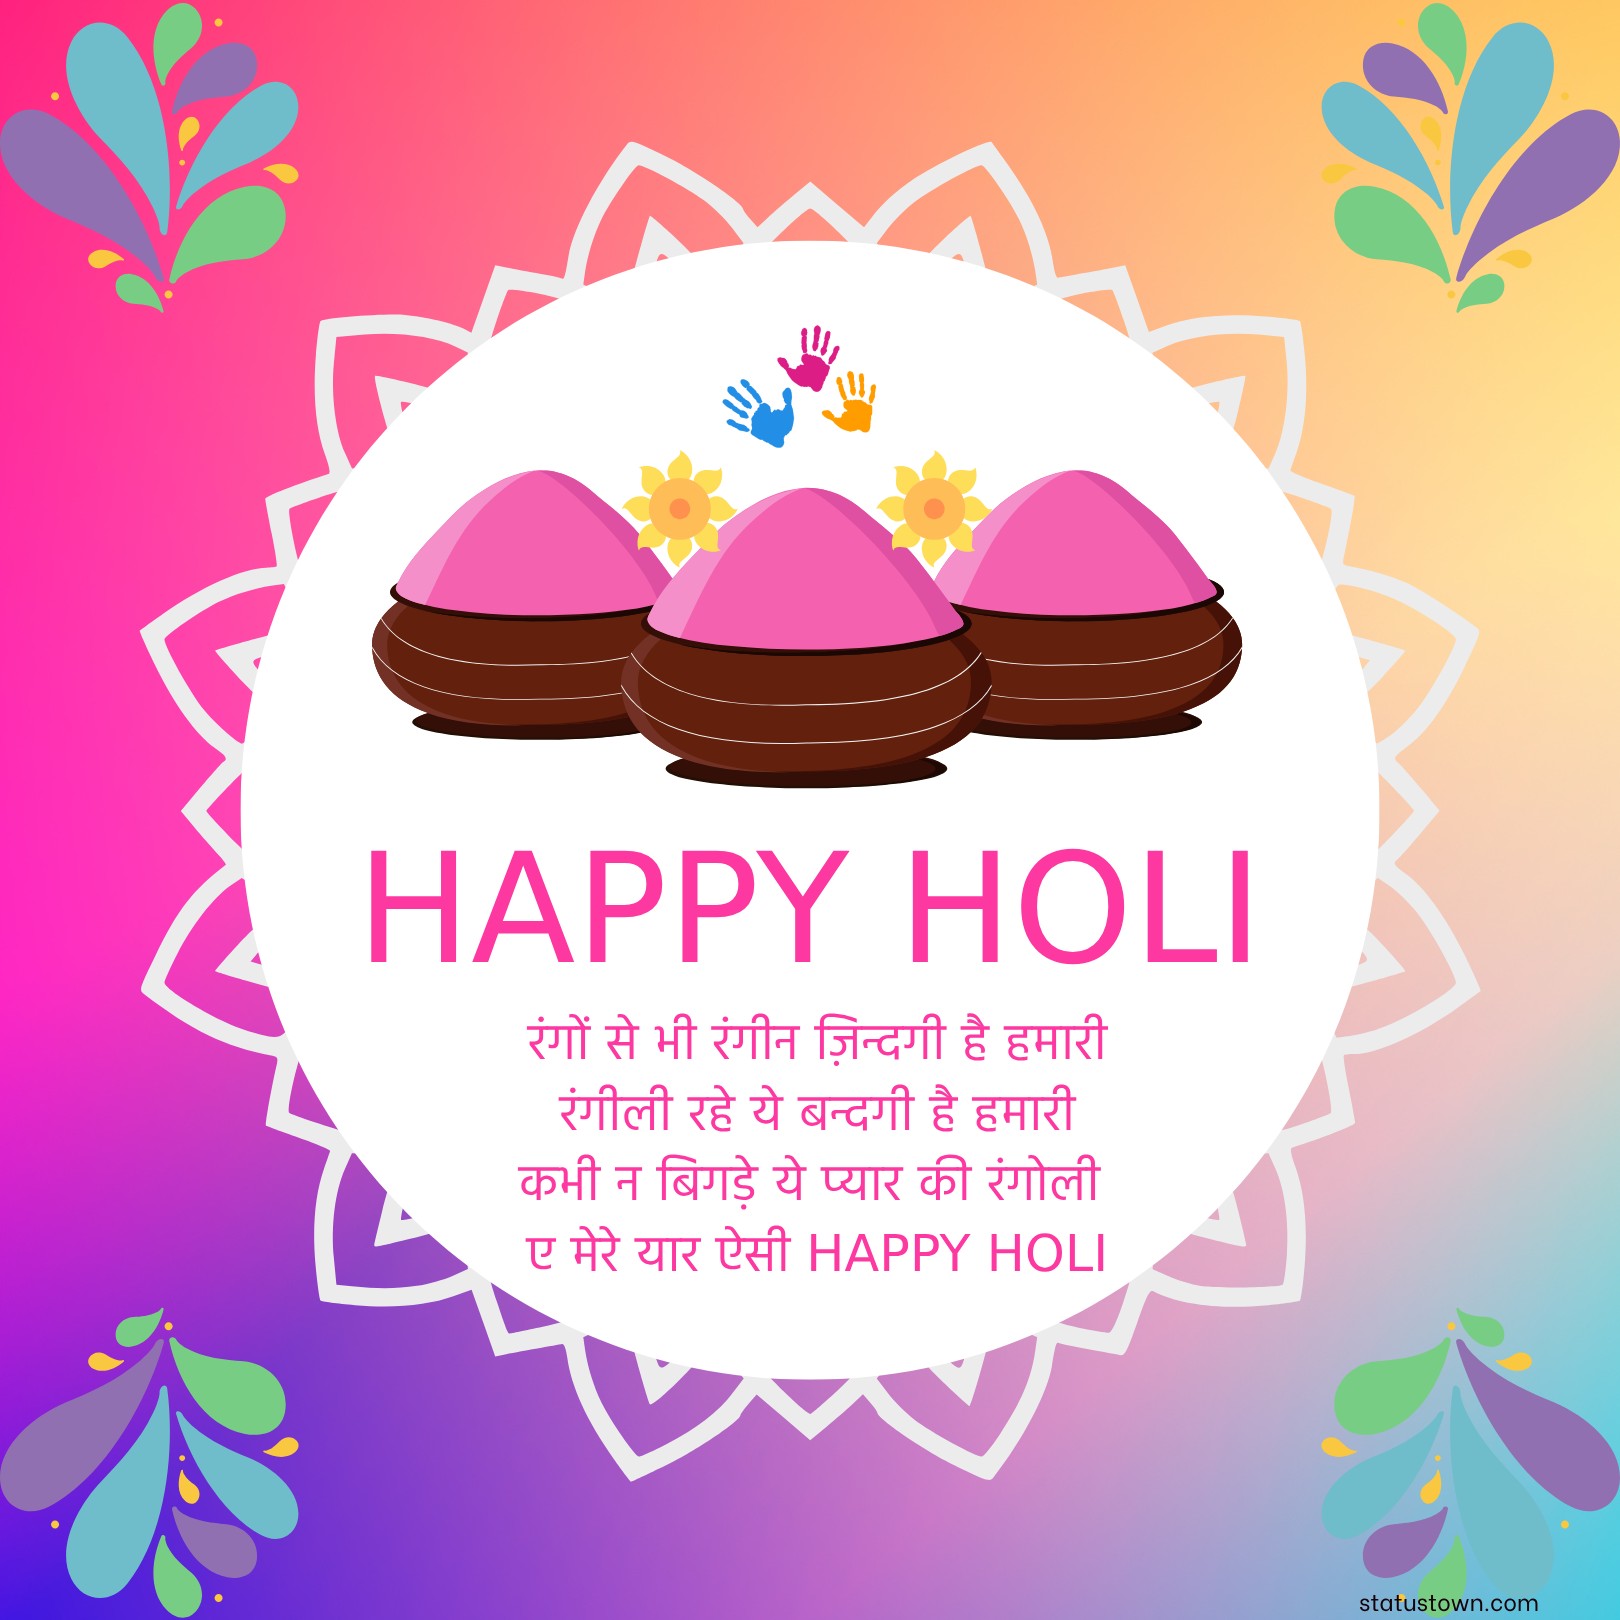 रंगों से भी रंगीन ज़िन्दगी है हमारी, रंगीली रहे ये बन्दगी है हमारी, कभी न बिगड़े ये प्यार की रंगोली, ए मेरे यार ऐसी HAPPY HOLI। 
 - Holi Wishes in Hindi